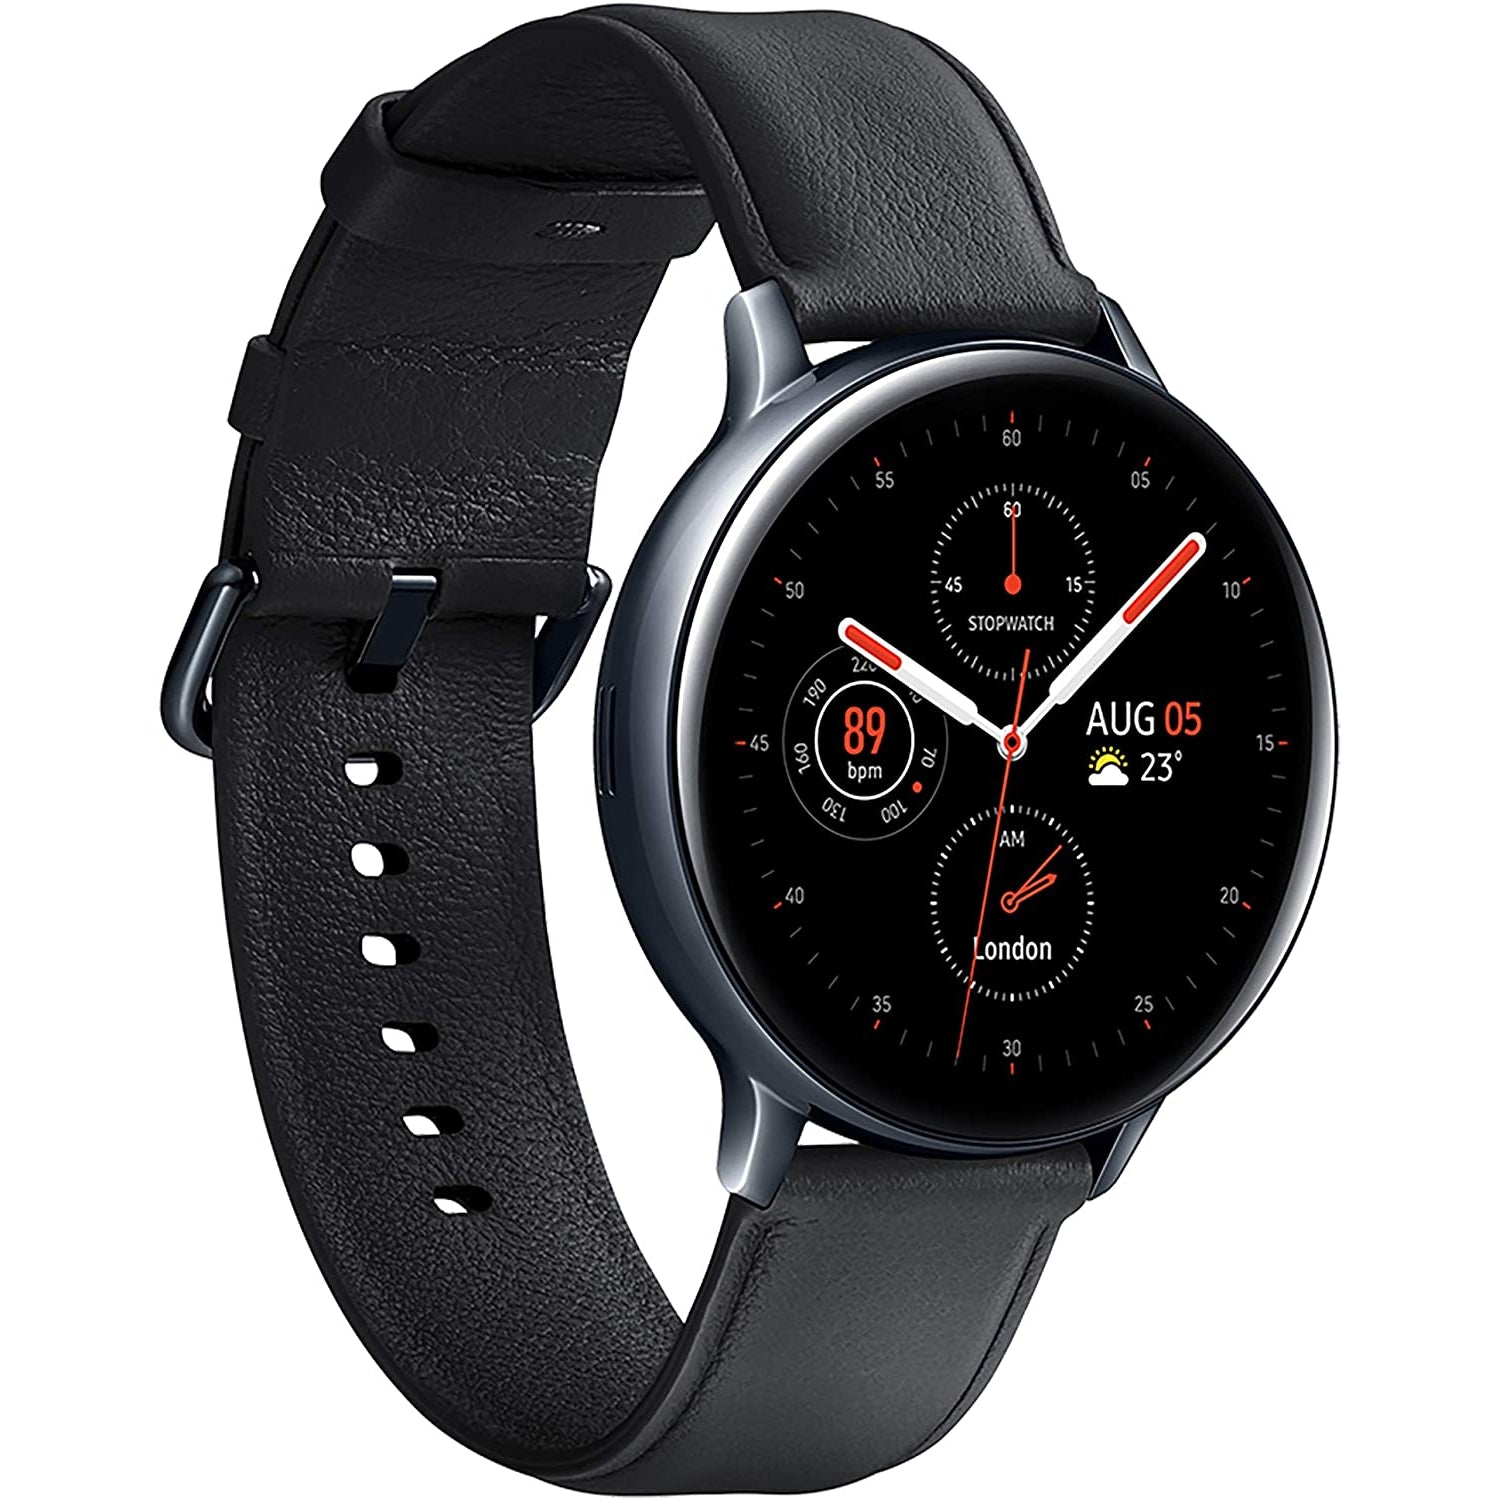 Samsung Galaxy Watch Active 2 4G LTE Stainless Steel 44mm SM-R825F, Black (Pristine)